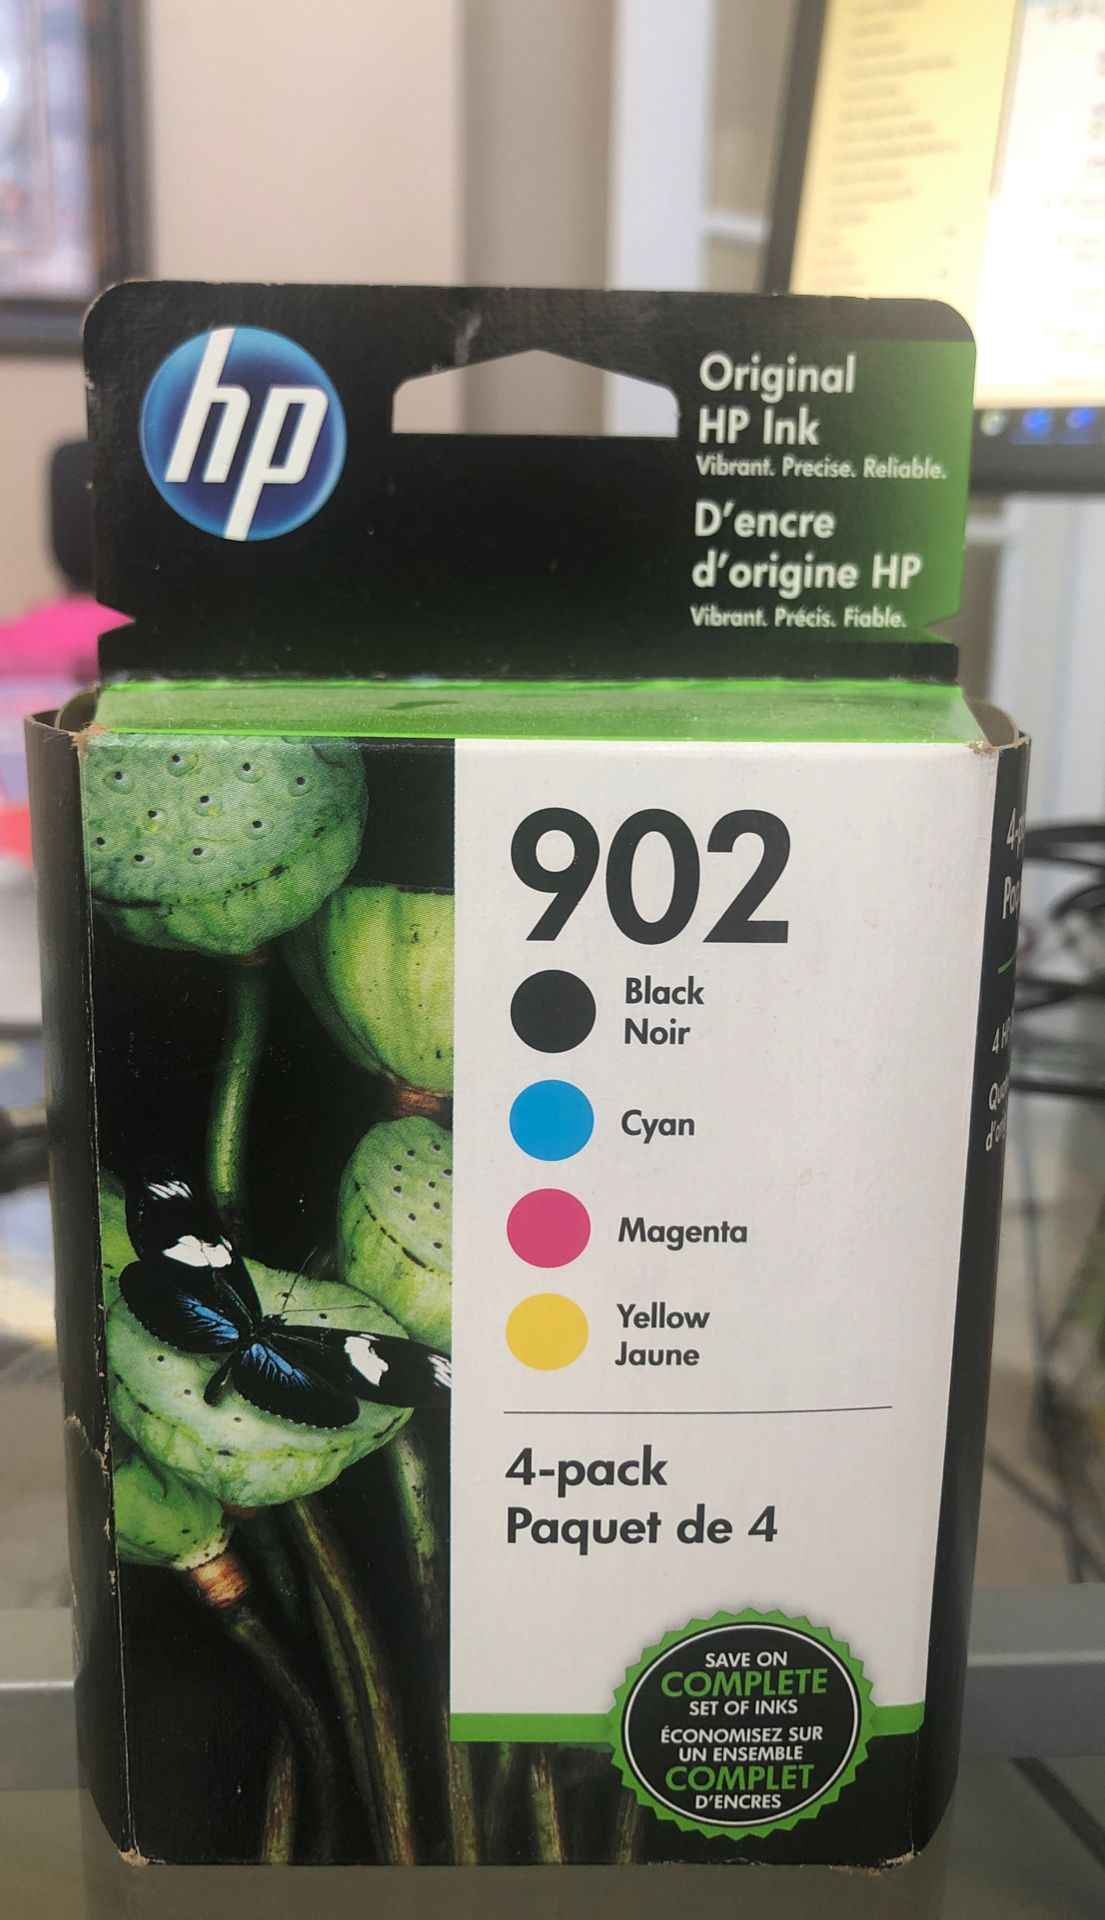 HP printer ink - 902 4 pack